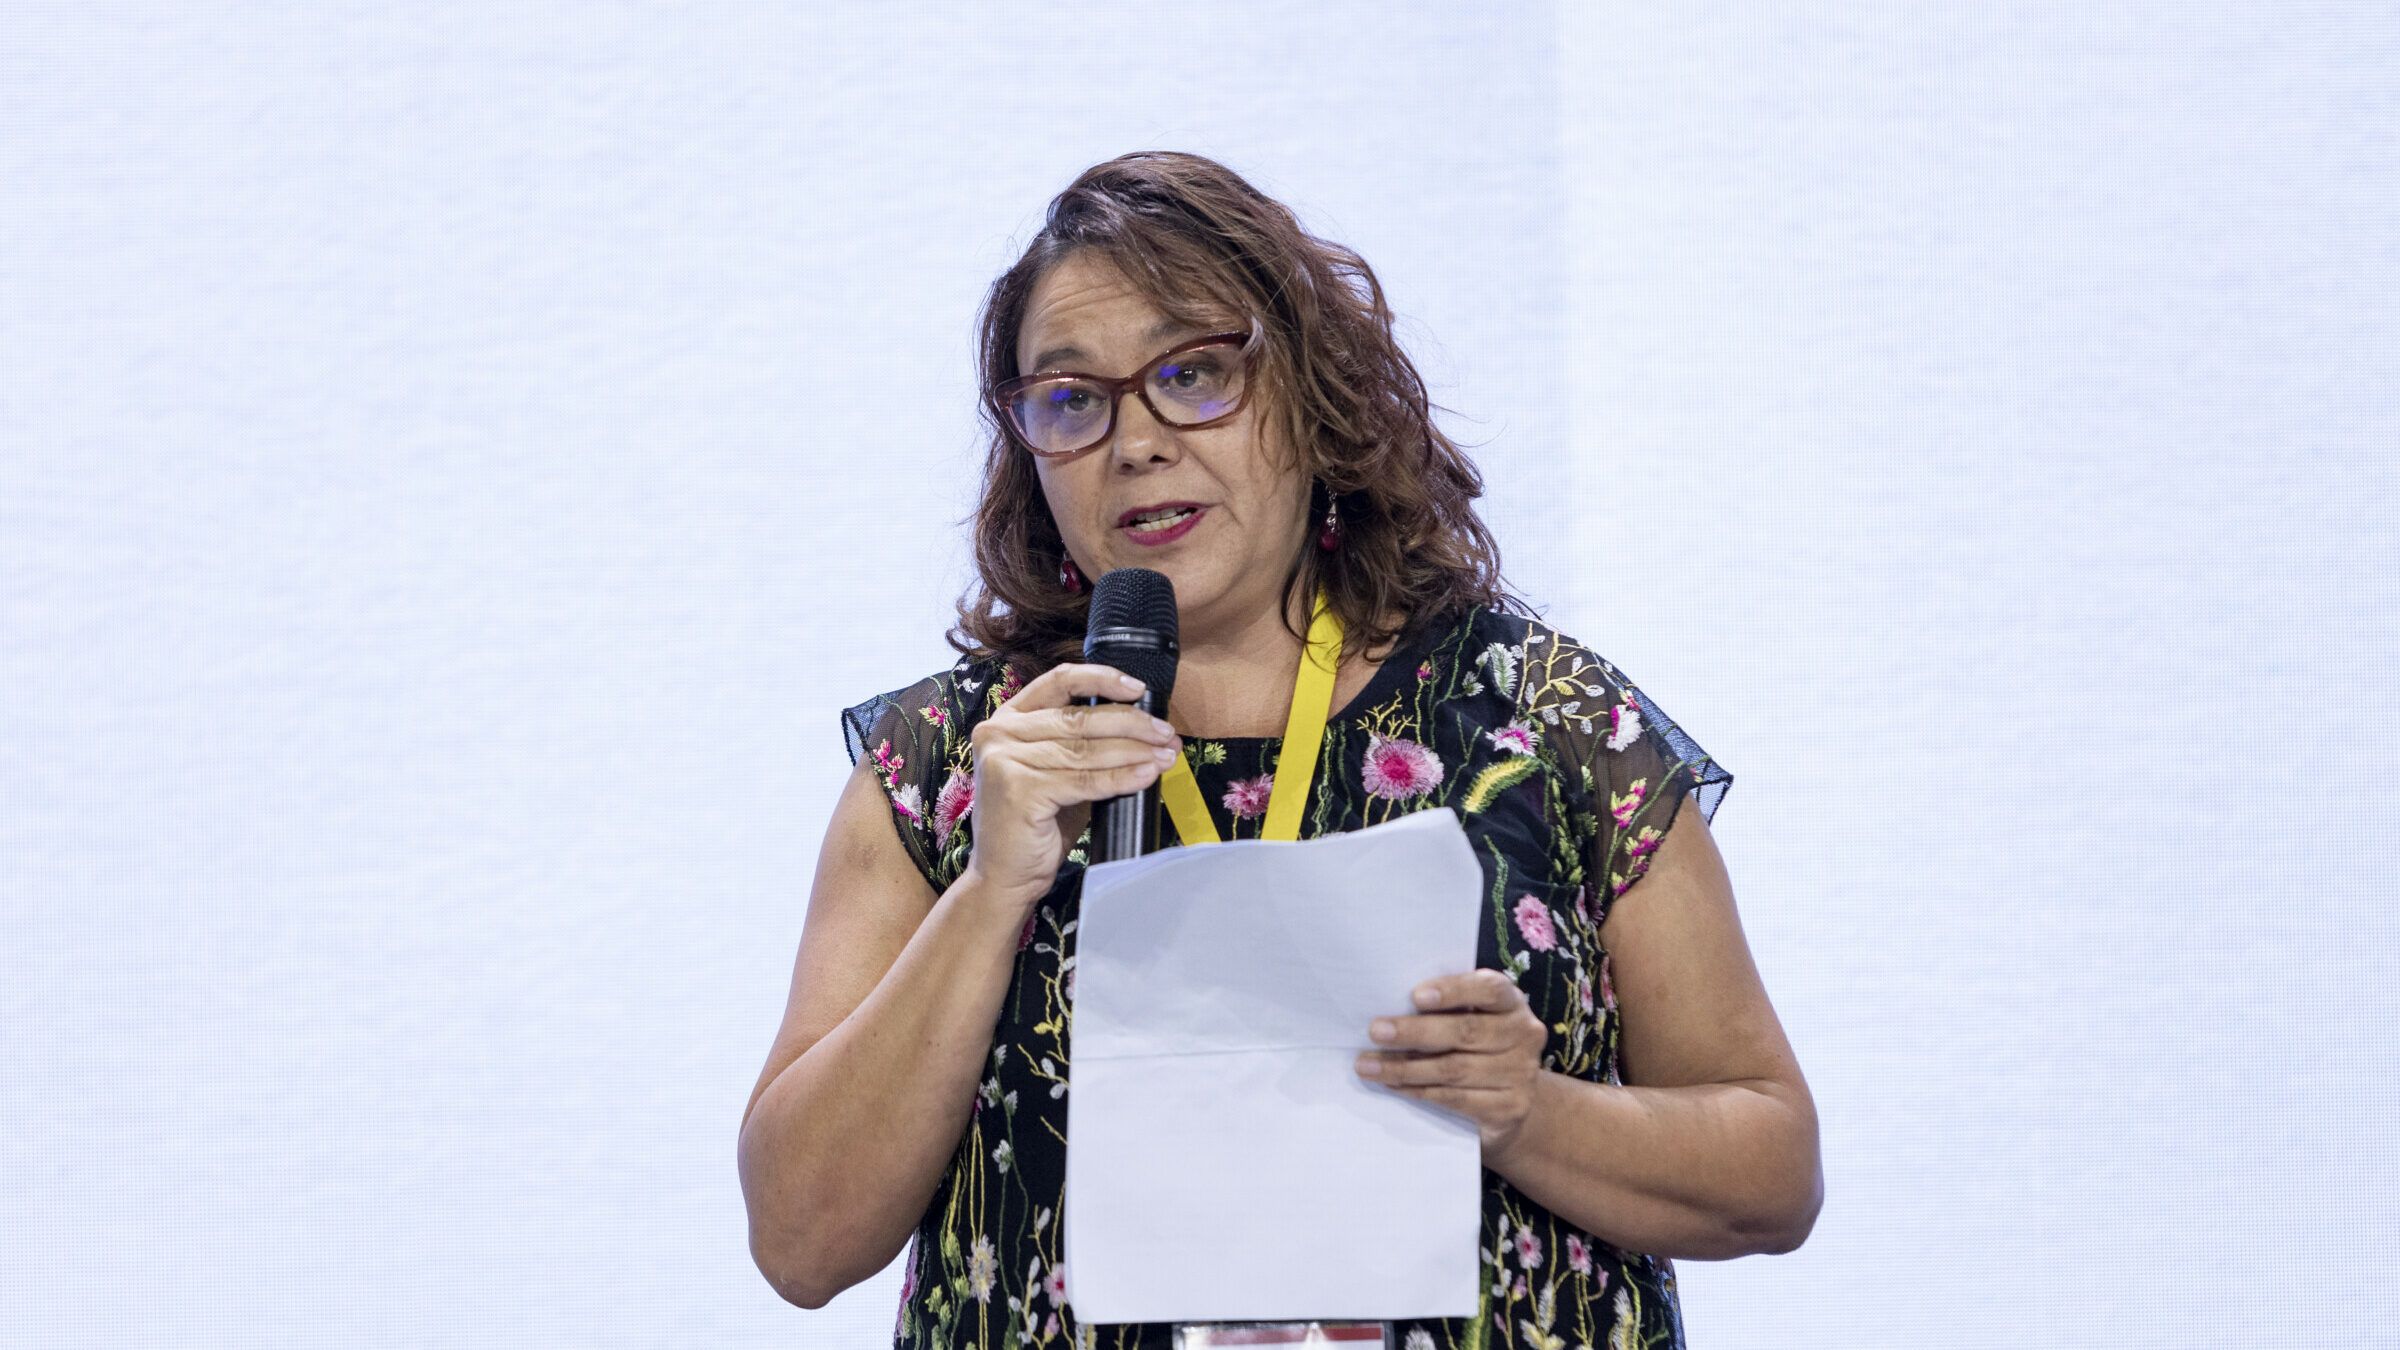 Η Marcela Turati κρατά το μικρόφωνο και ένα κομμάτι χαρτί ενώ στέκεται στην κεντρική σκηνή του Διεθνούς Φόρουμ Δημοσιογραφίας του iMEdD. Παρουσιάζει στη σειρά ομιλιών «Σκέψεις για την ελευθερία του Τύπου ή την έλλειψη της».
Λεζάντα: Φωτογραφία: Χρήστος Καραγεωργάκης